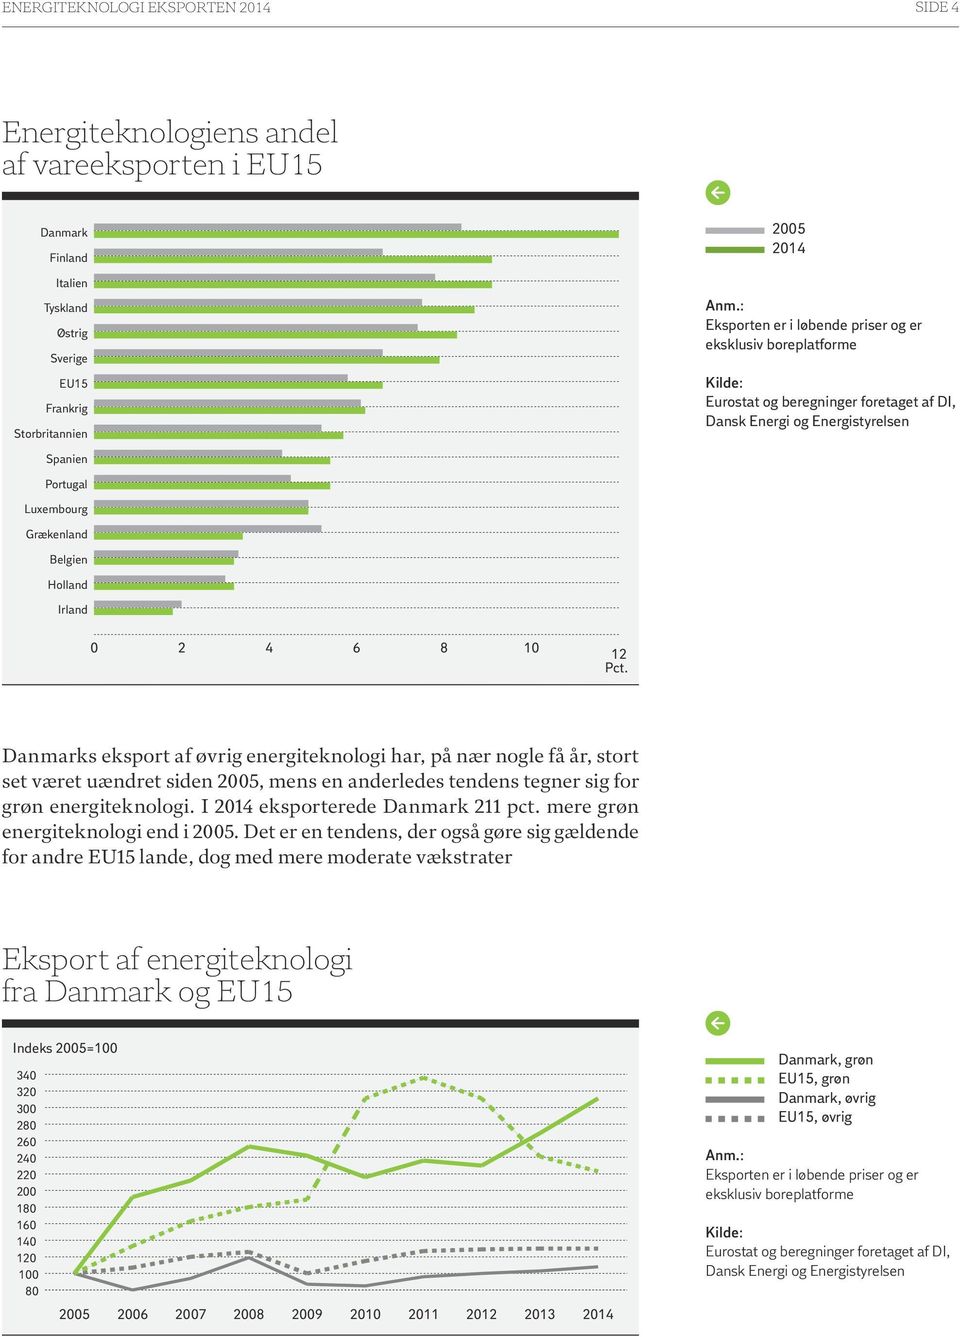 Danmarks eksport af øvrig energiteknologi har, på nær nogle få år, stort set været uændret siden 2005, mens en anderledes tendens tegner sig for grøn energiteknologi.